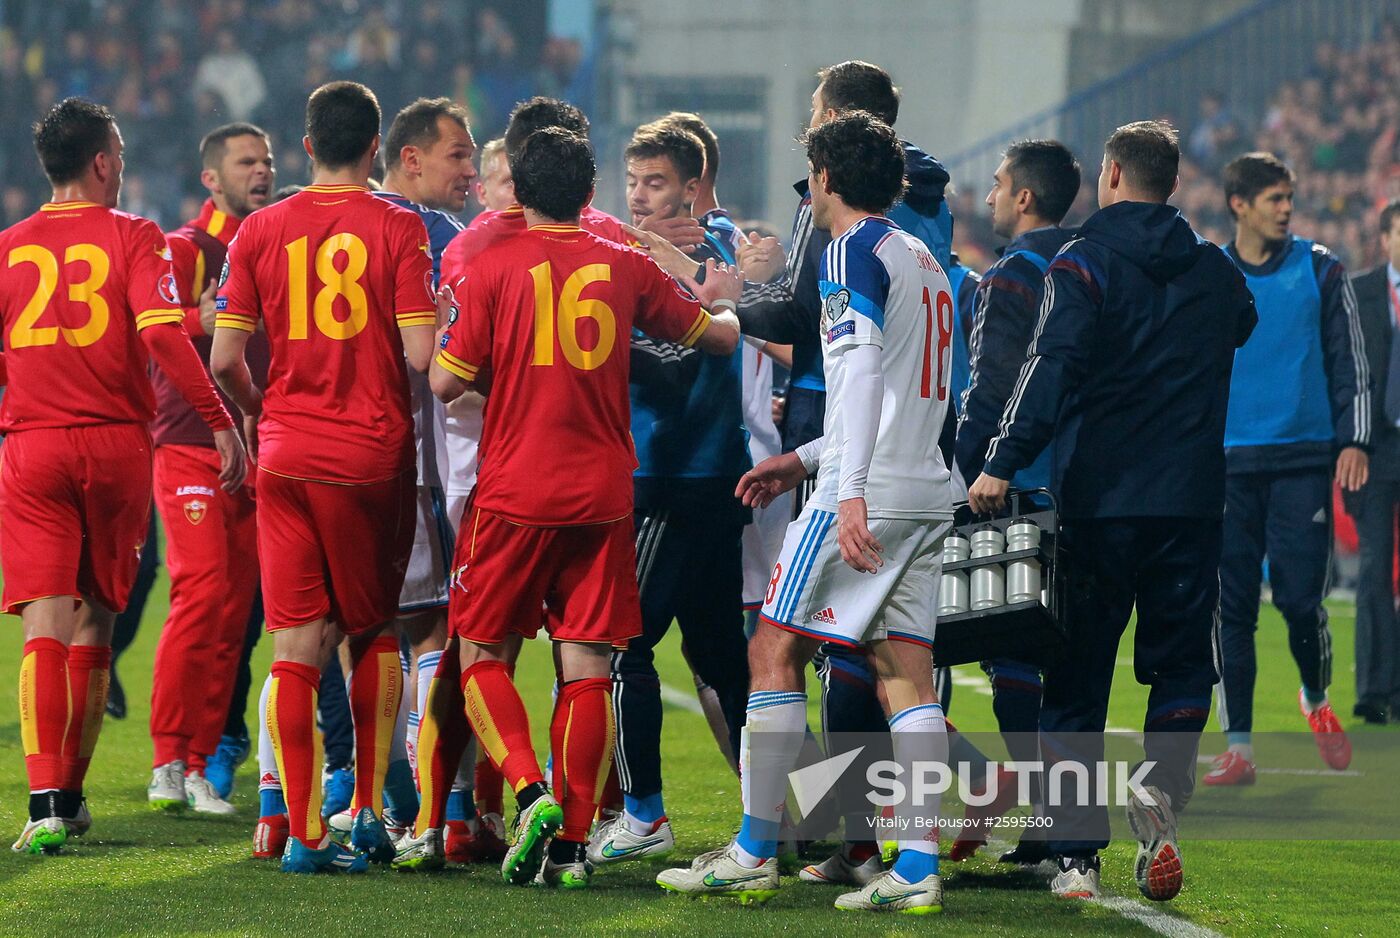 UEFA EURO 2016 qualifier. Montenegro vs. Russia